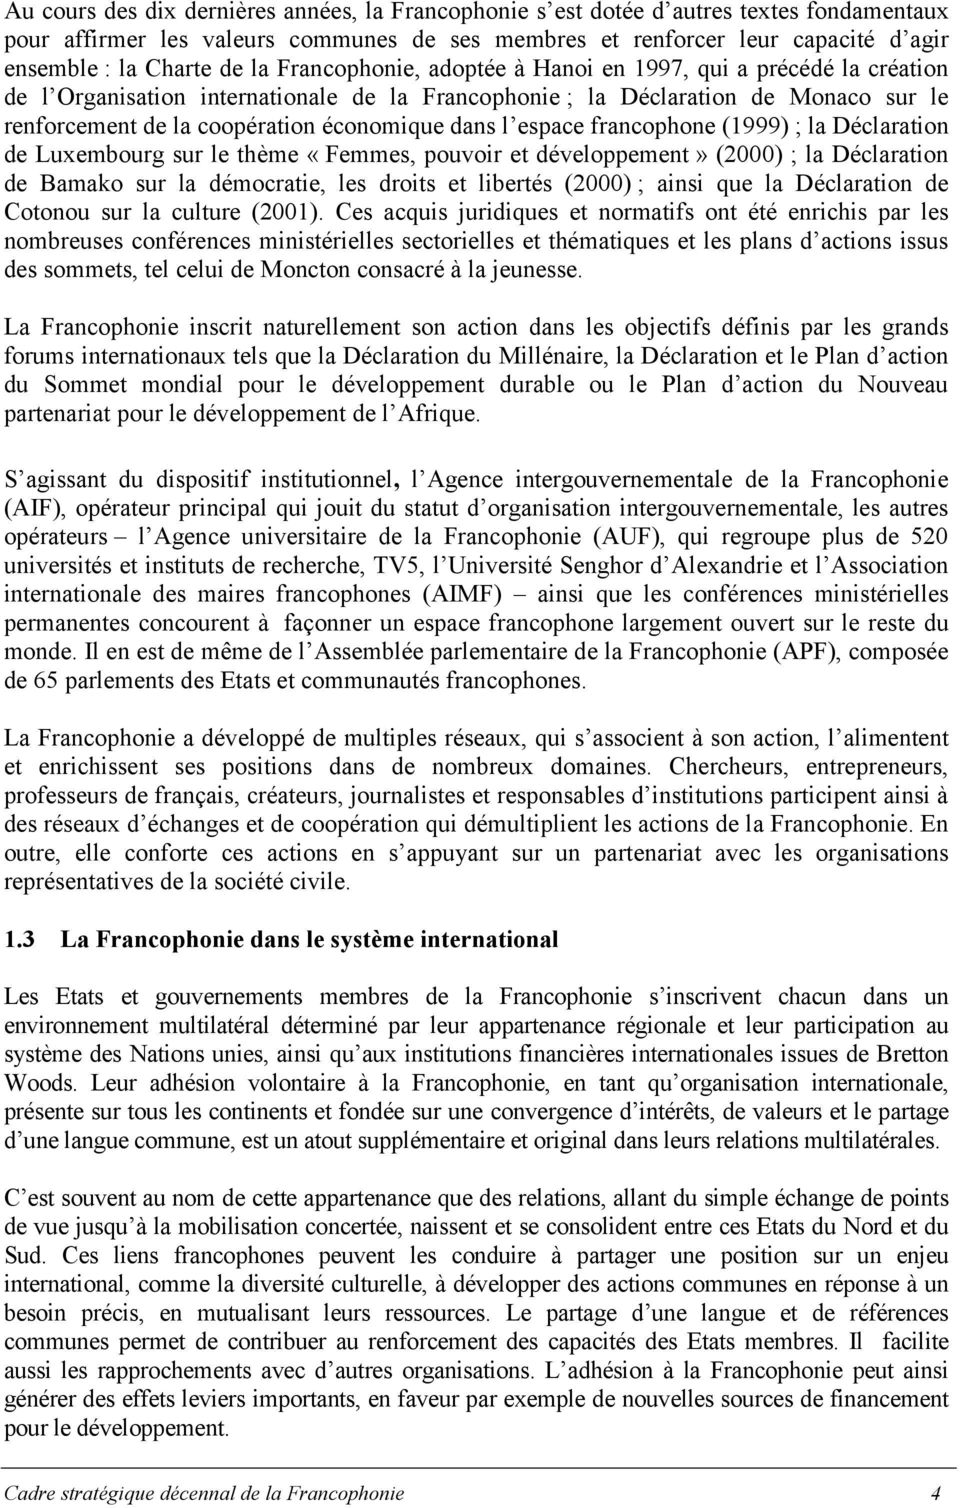 dans l espace francophone (1999) ; la Déclaration de Luxembourg sur le thème «Femmes, pouvoir et développement» (2000) ; la Déclaration de Bamako sur la démocratie, les droits et libertés (2000) ;